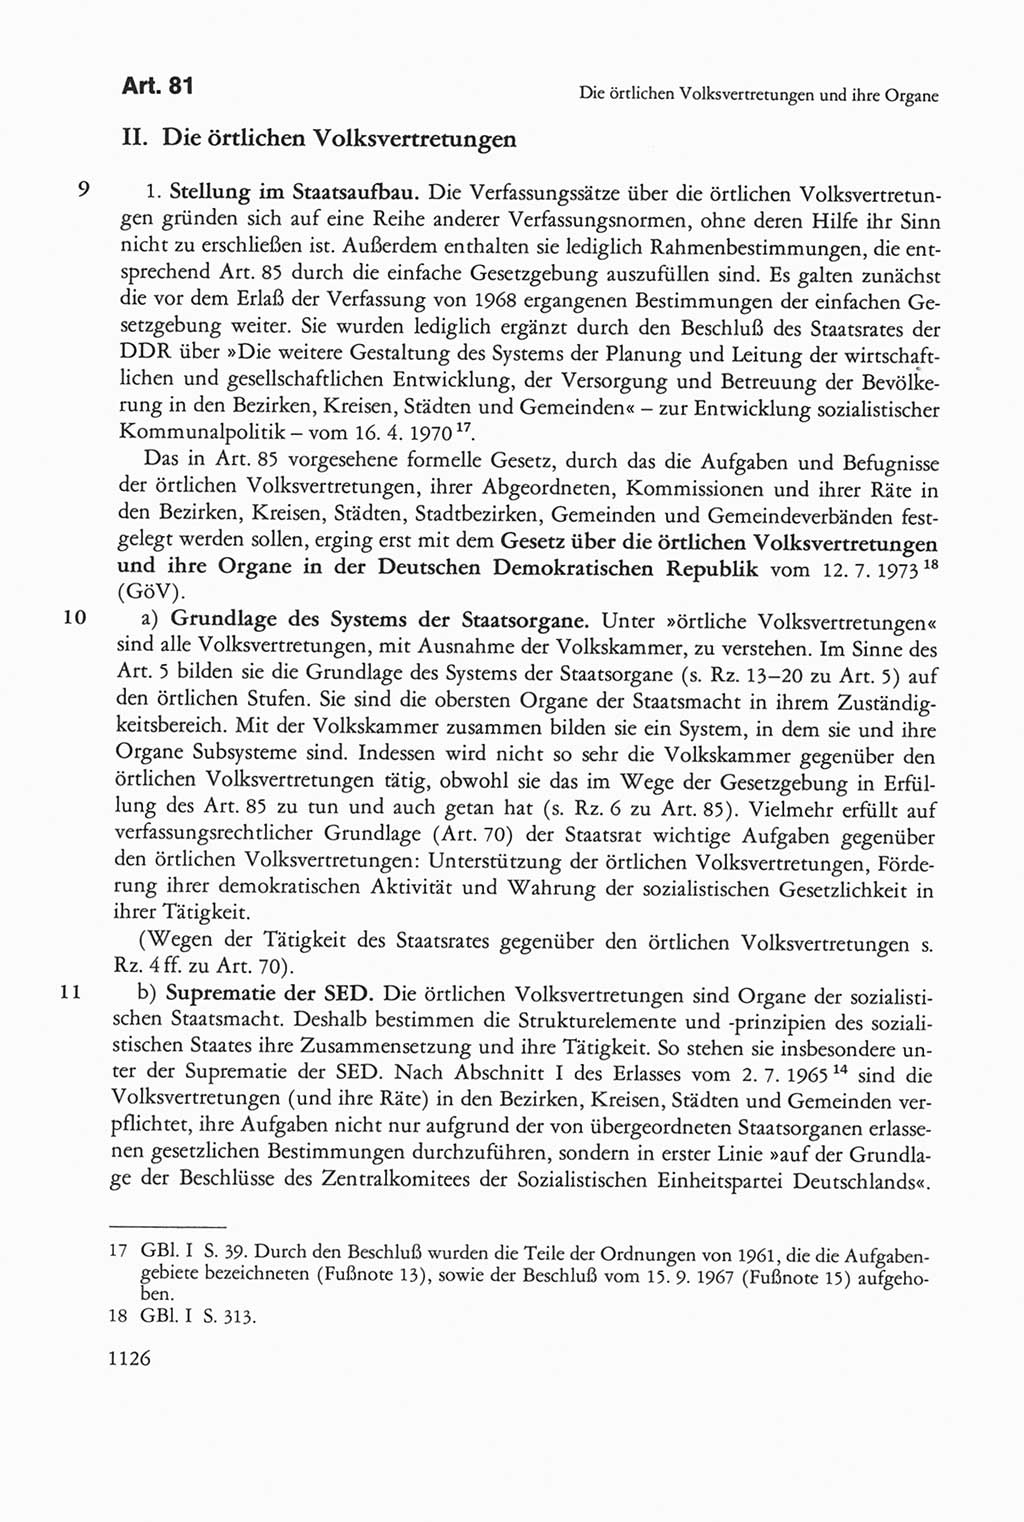 Die sozialistische Verfassung der Deutschen Demokratischen Republik (DDR), Kommentar 1982, Seite 1126 (Soz. Verf. DDR Komm. 1982, S. 1126)